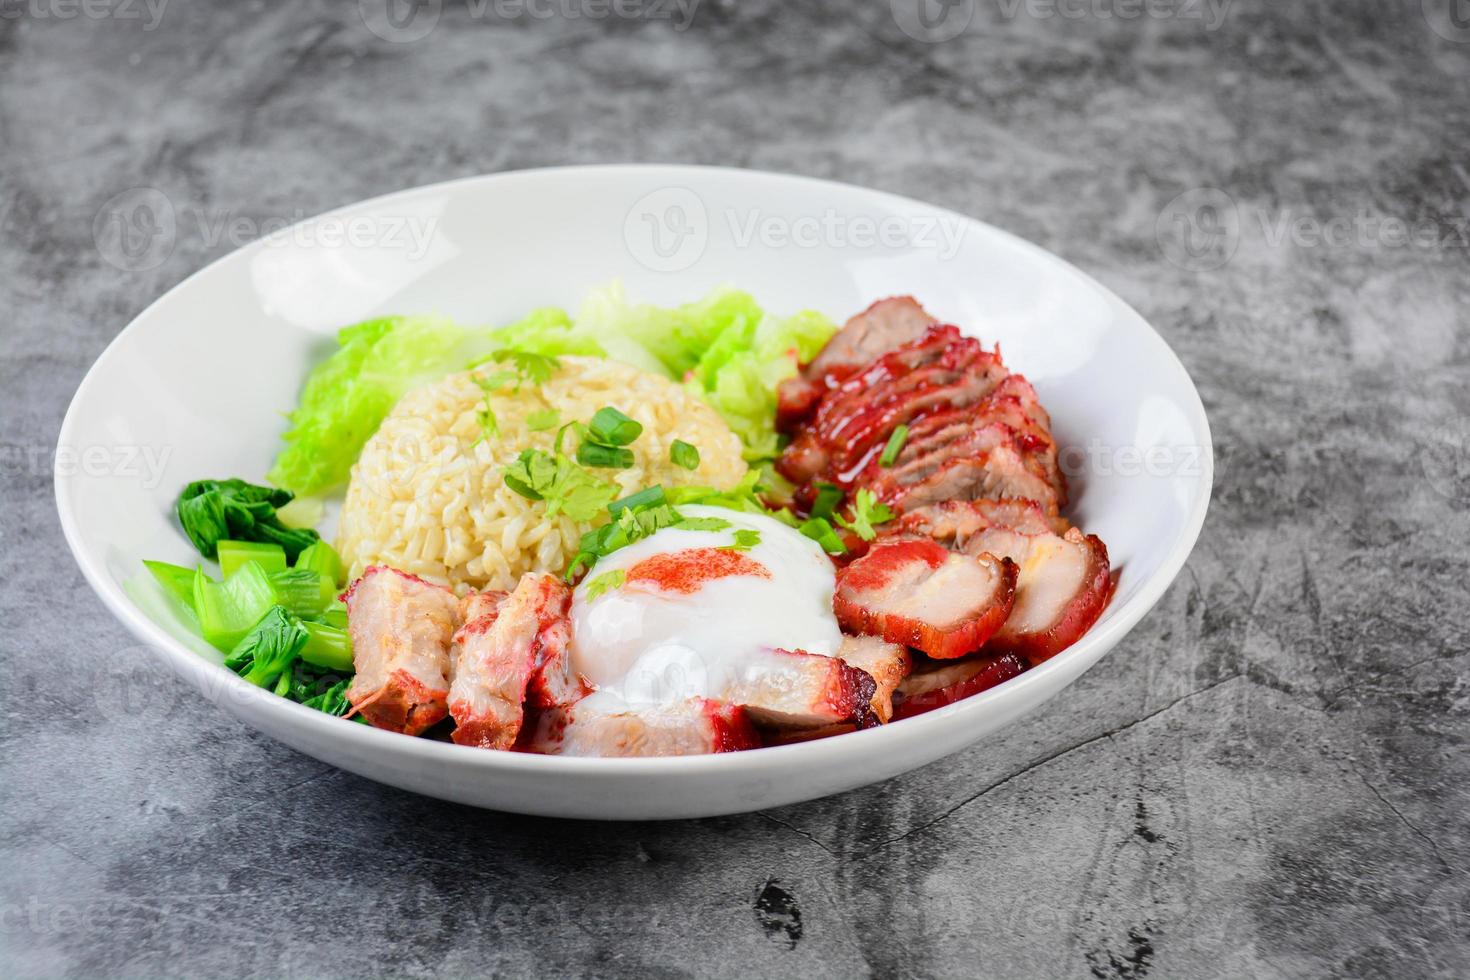 porc rouge grillé et porc croustillant en sauce rouge, servis avec du riz et des légumes sur une assiette blanche. photo